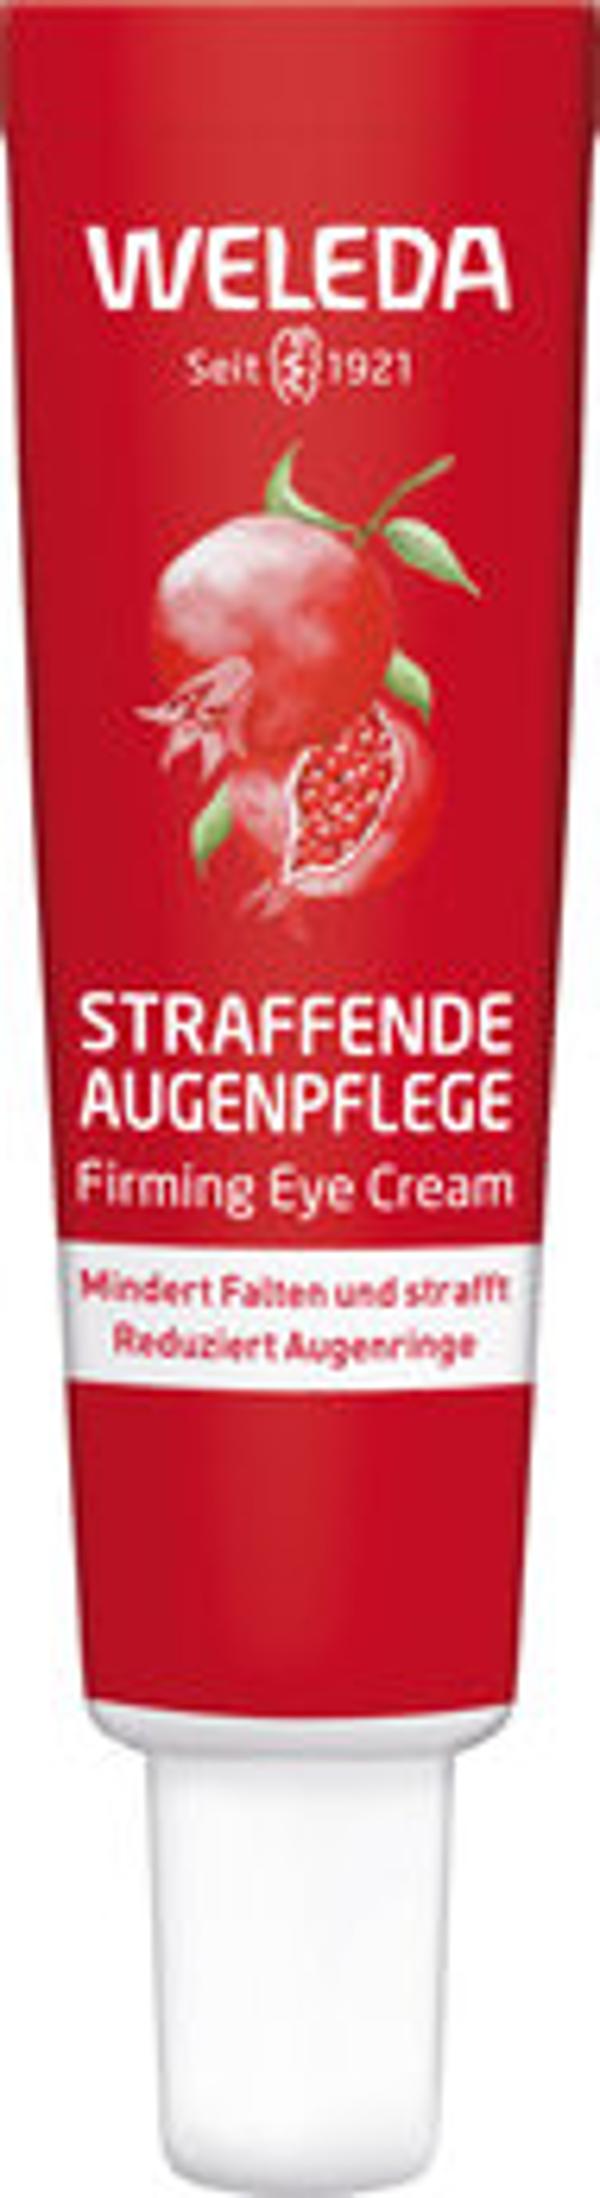 Produktfoto zu Straffende Augenpflege Granatapfel, 12 ml